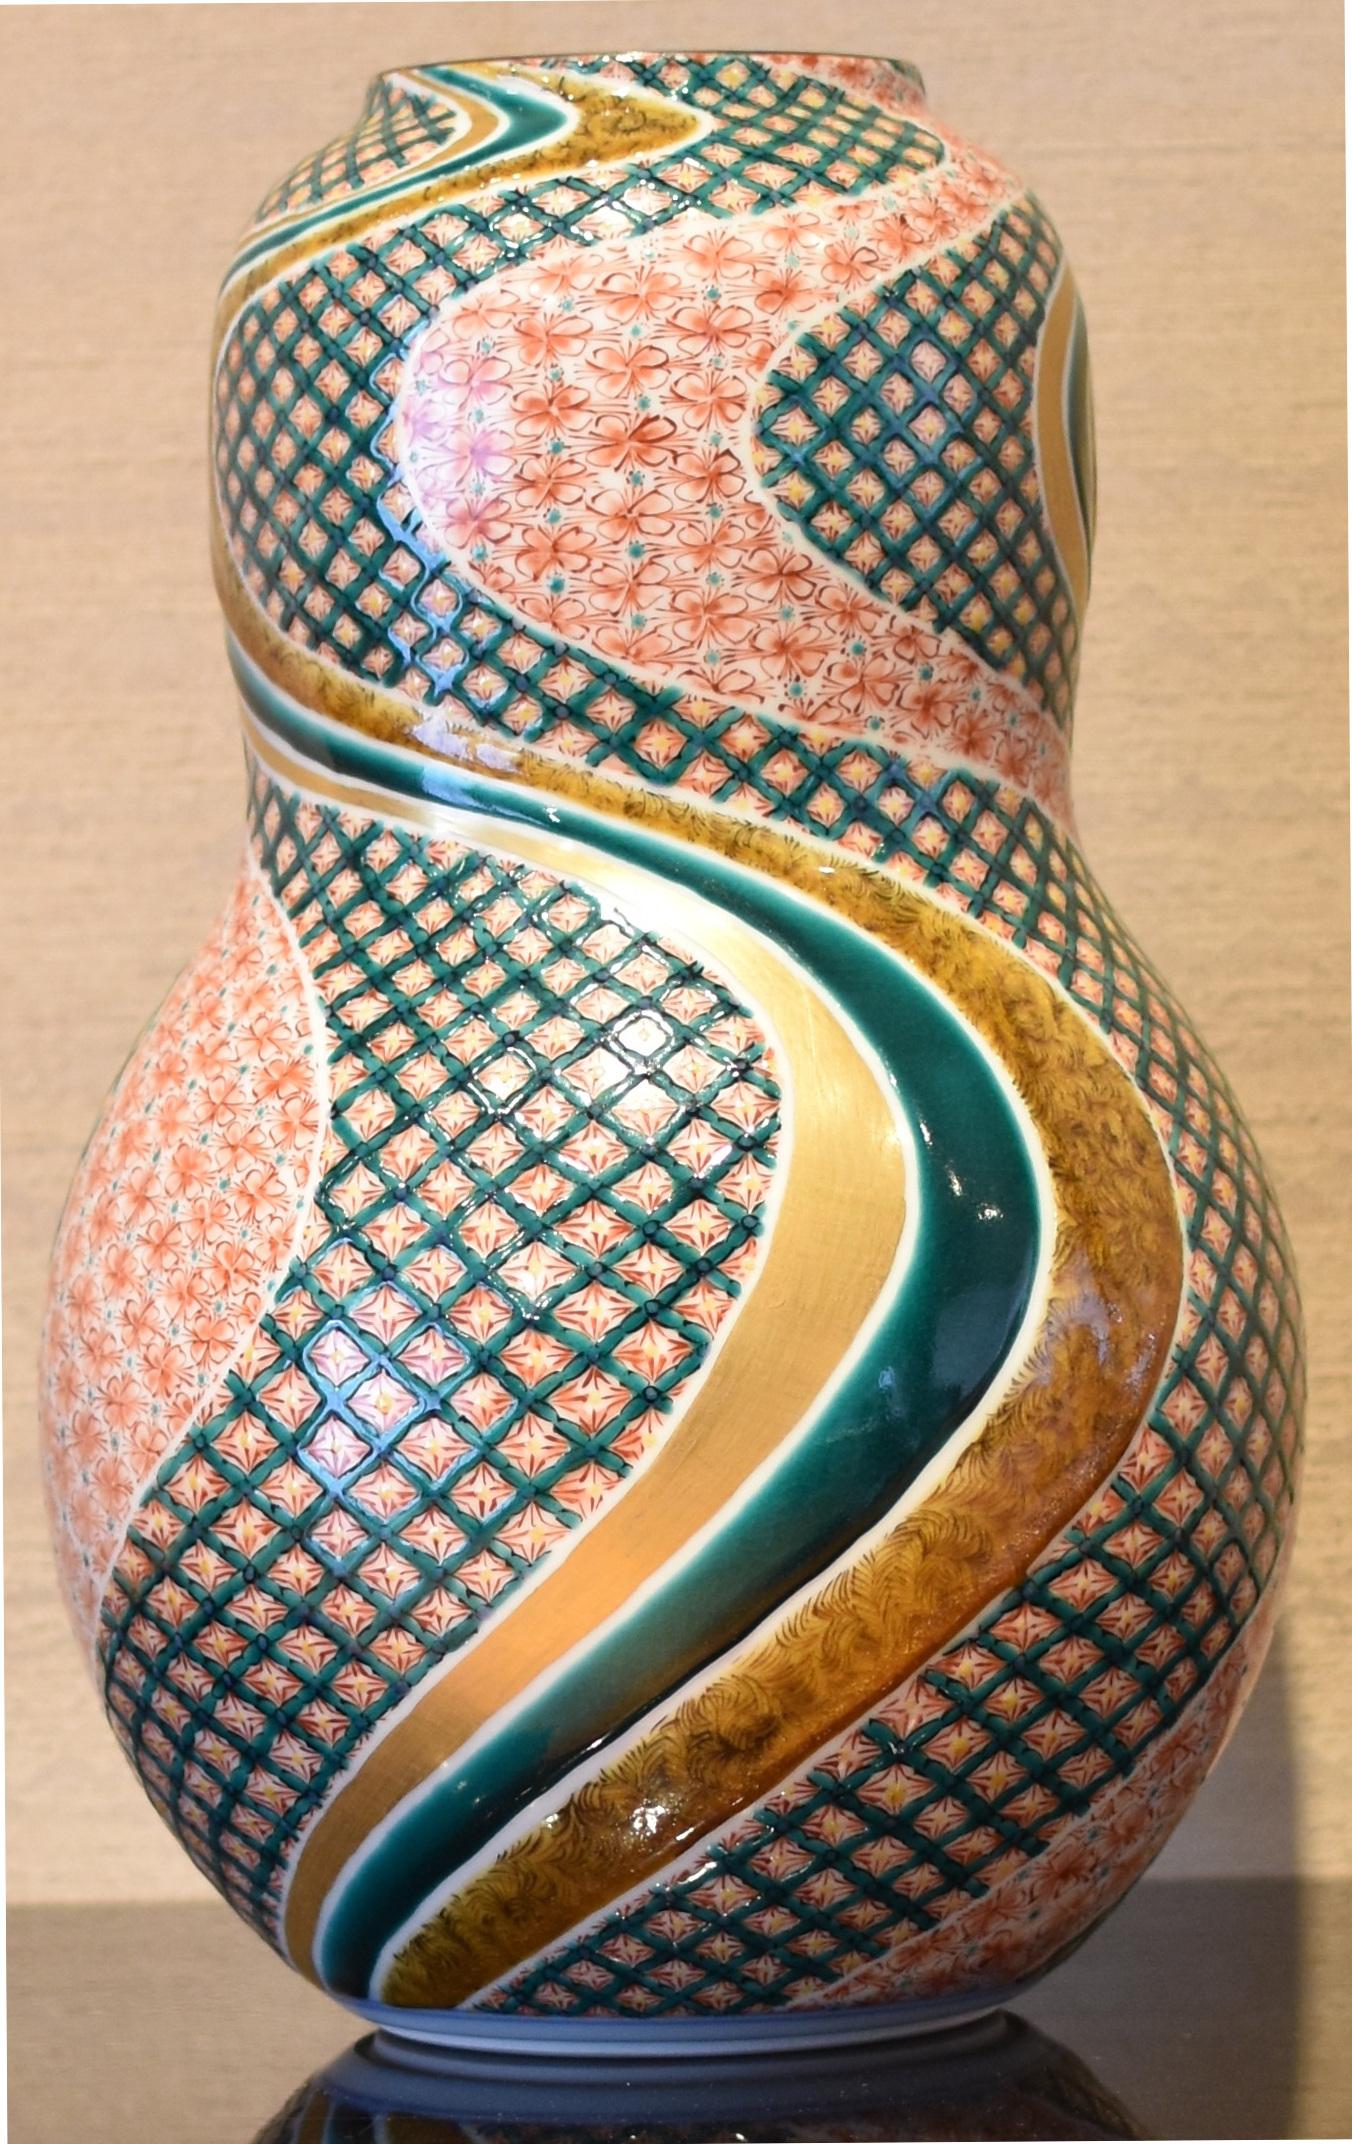 Faszinierende zeitgenössische japanische Porzellanvase in Museumsqualität, extrem aufwändig vergoldet und handbemalt in Rot und Grün auf einem atemberaubenden Doppelkürbis-Körper, ein signiertes Meisterwerk eines Porzellanmeisters der dritten